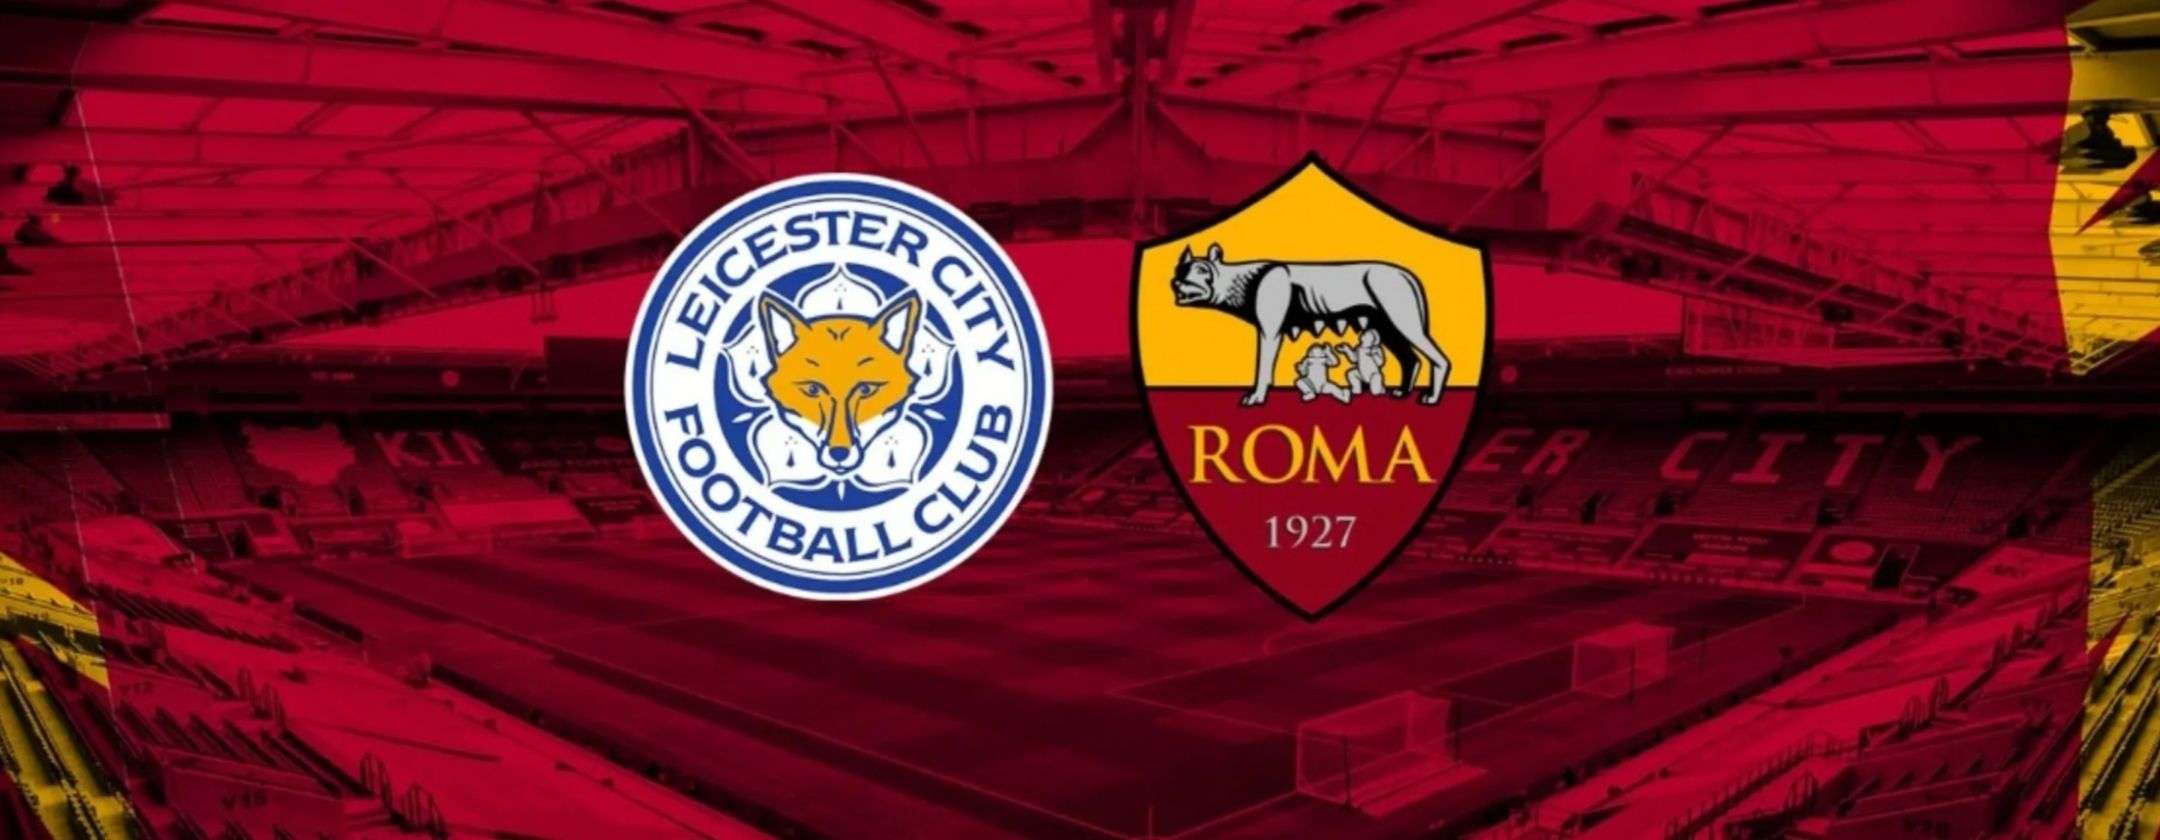 Perché molti consigliano una VPN per vedere Leicester-Roma in streaming